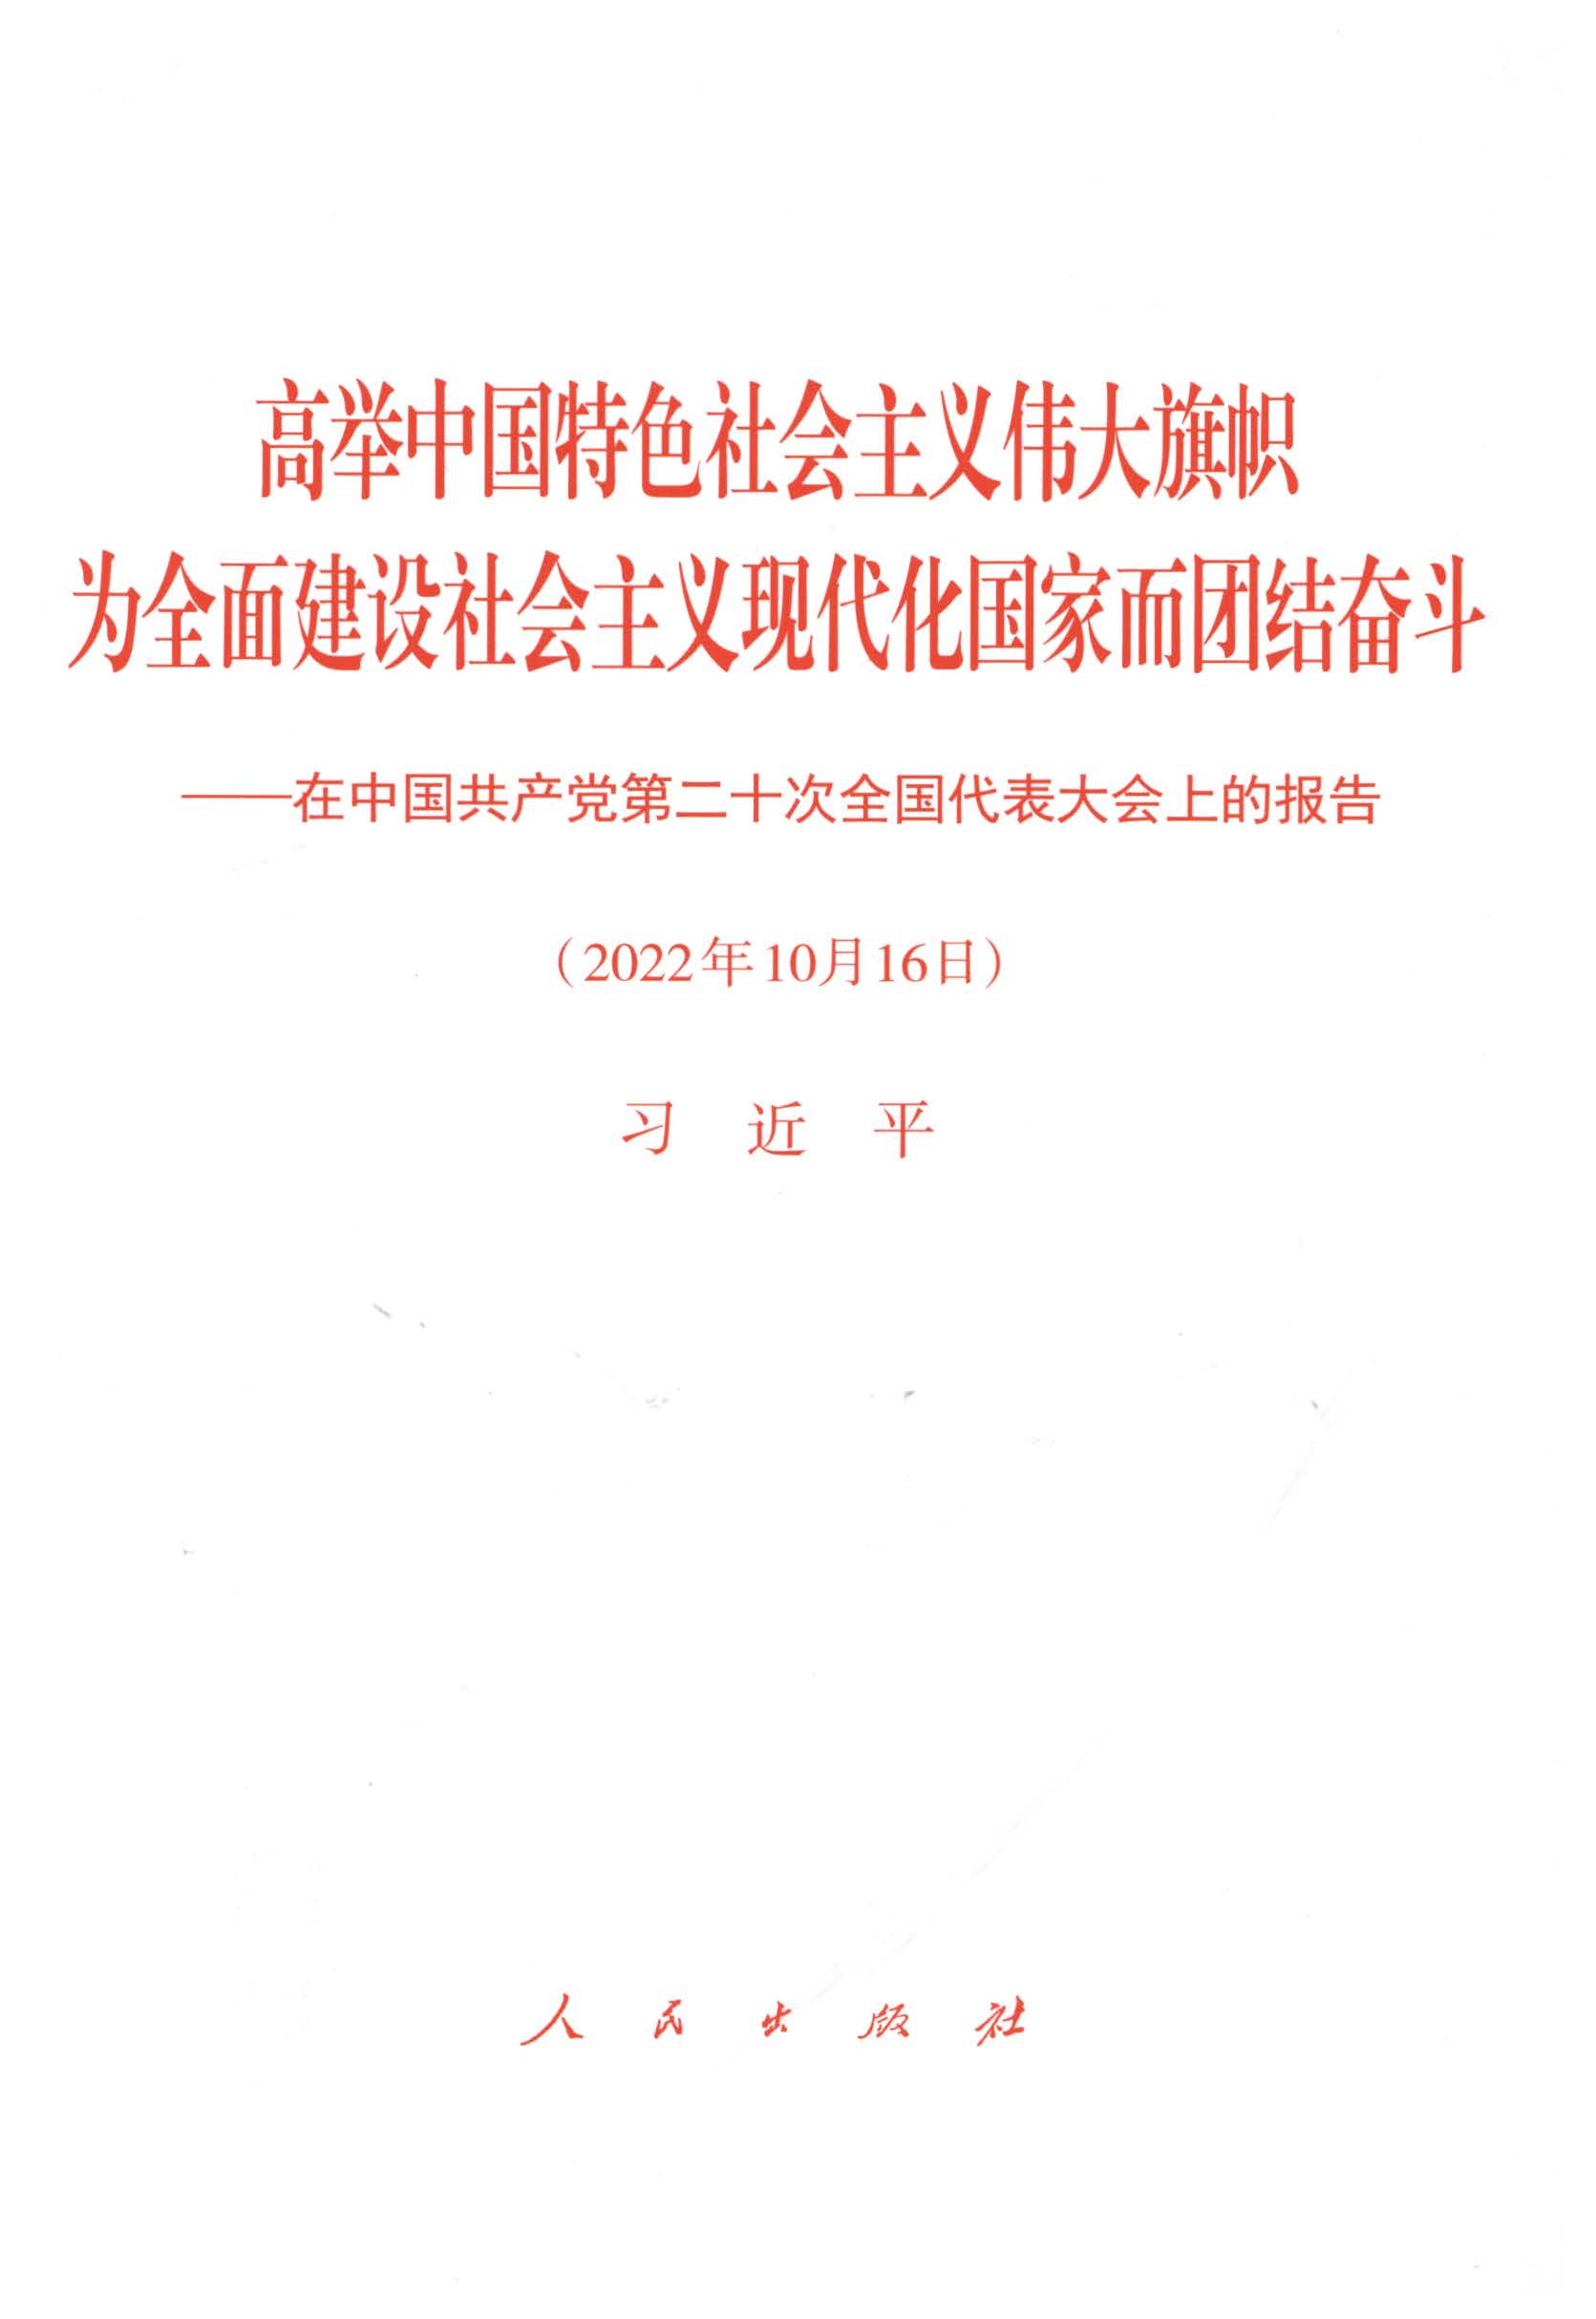 高举中国特色社会主义伟大旗帜 为全面建设社会主义现代化国家而团结奋斗——在中国共产党第二十次全国代表大会上的报告（2022年10月16日）